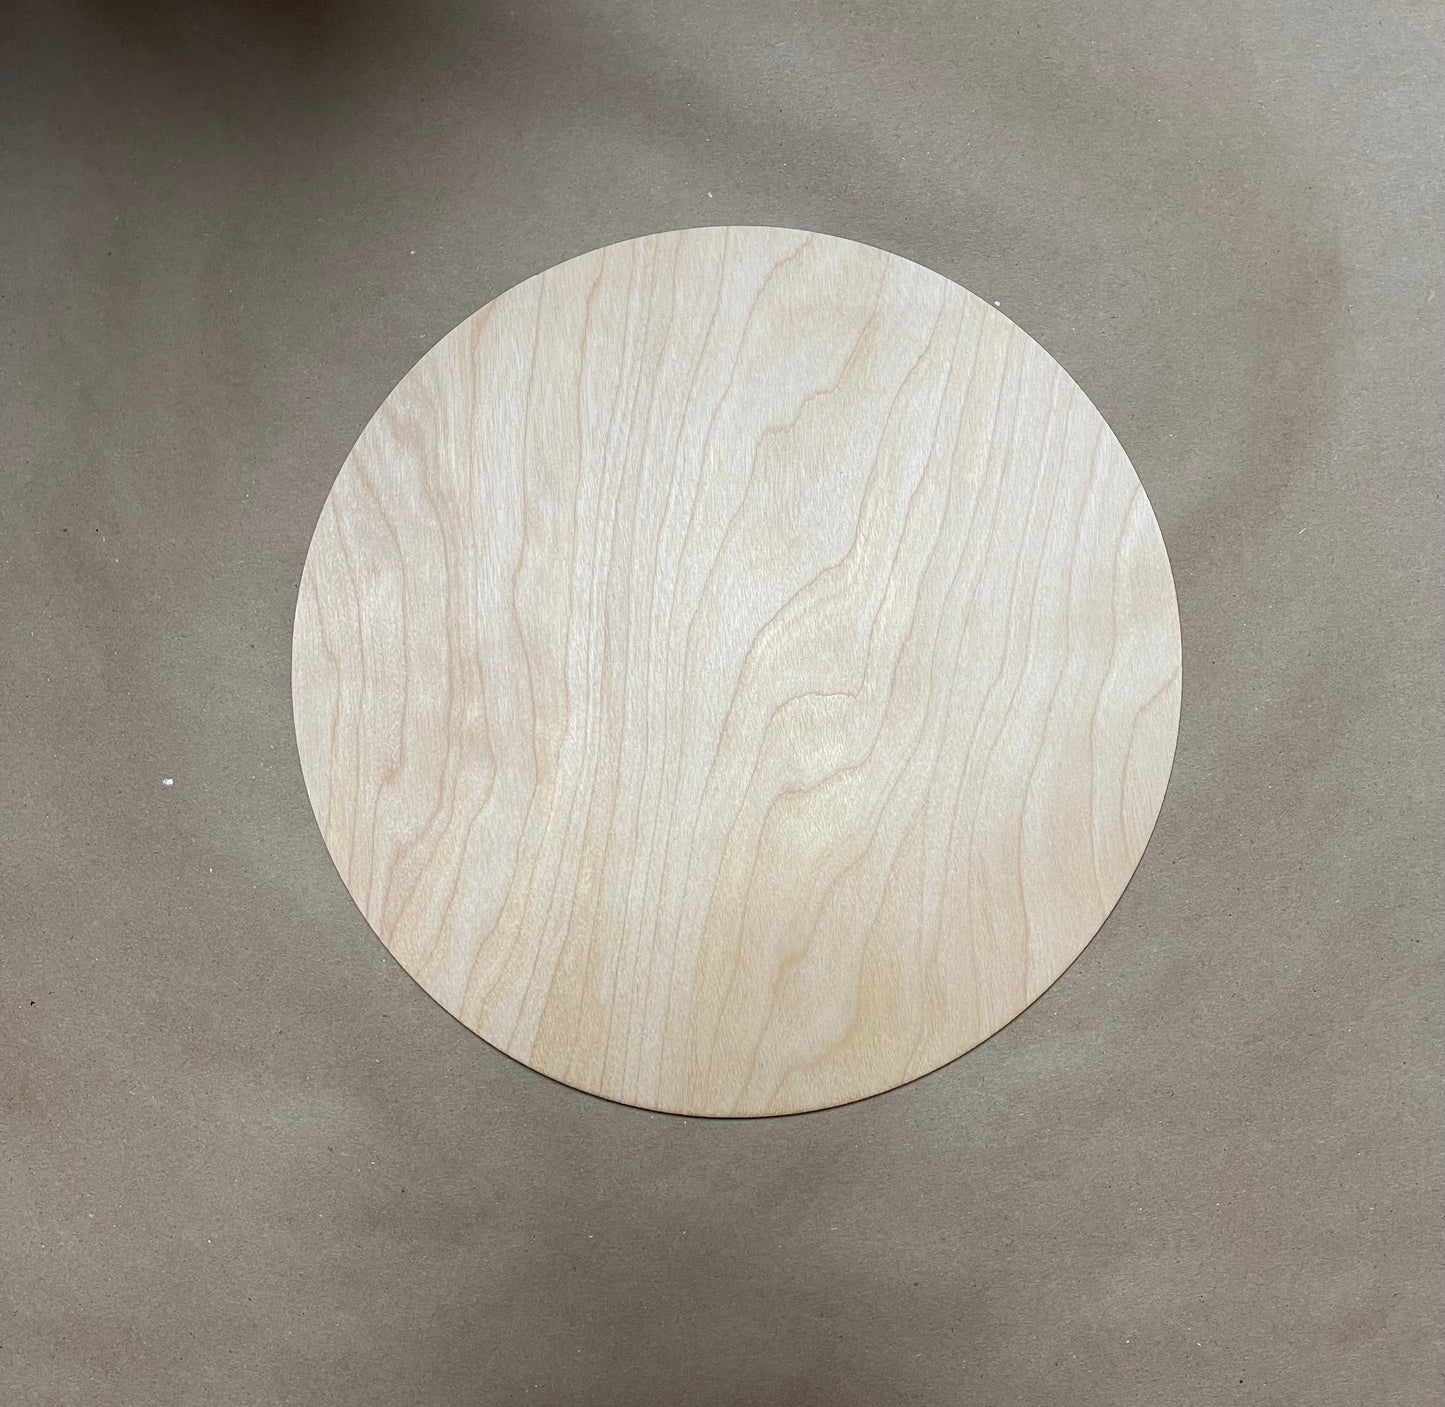 1/8” thickness wood round